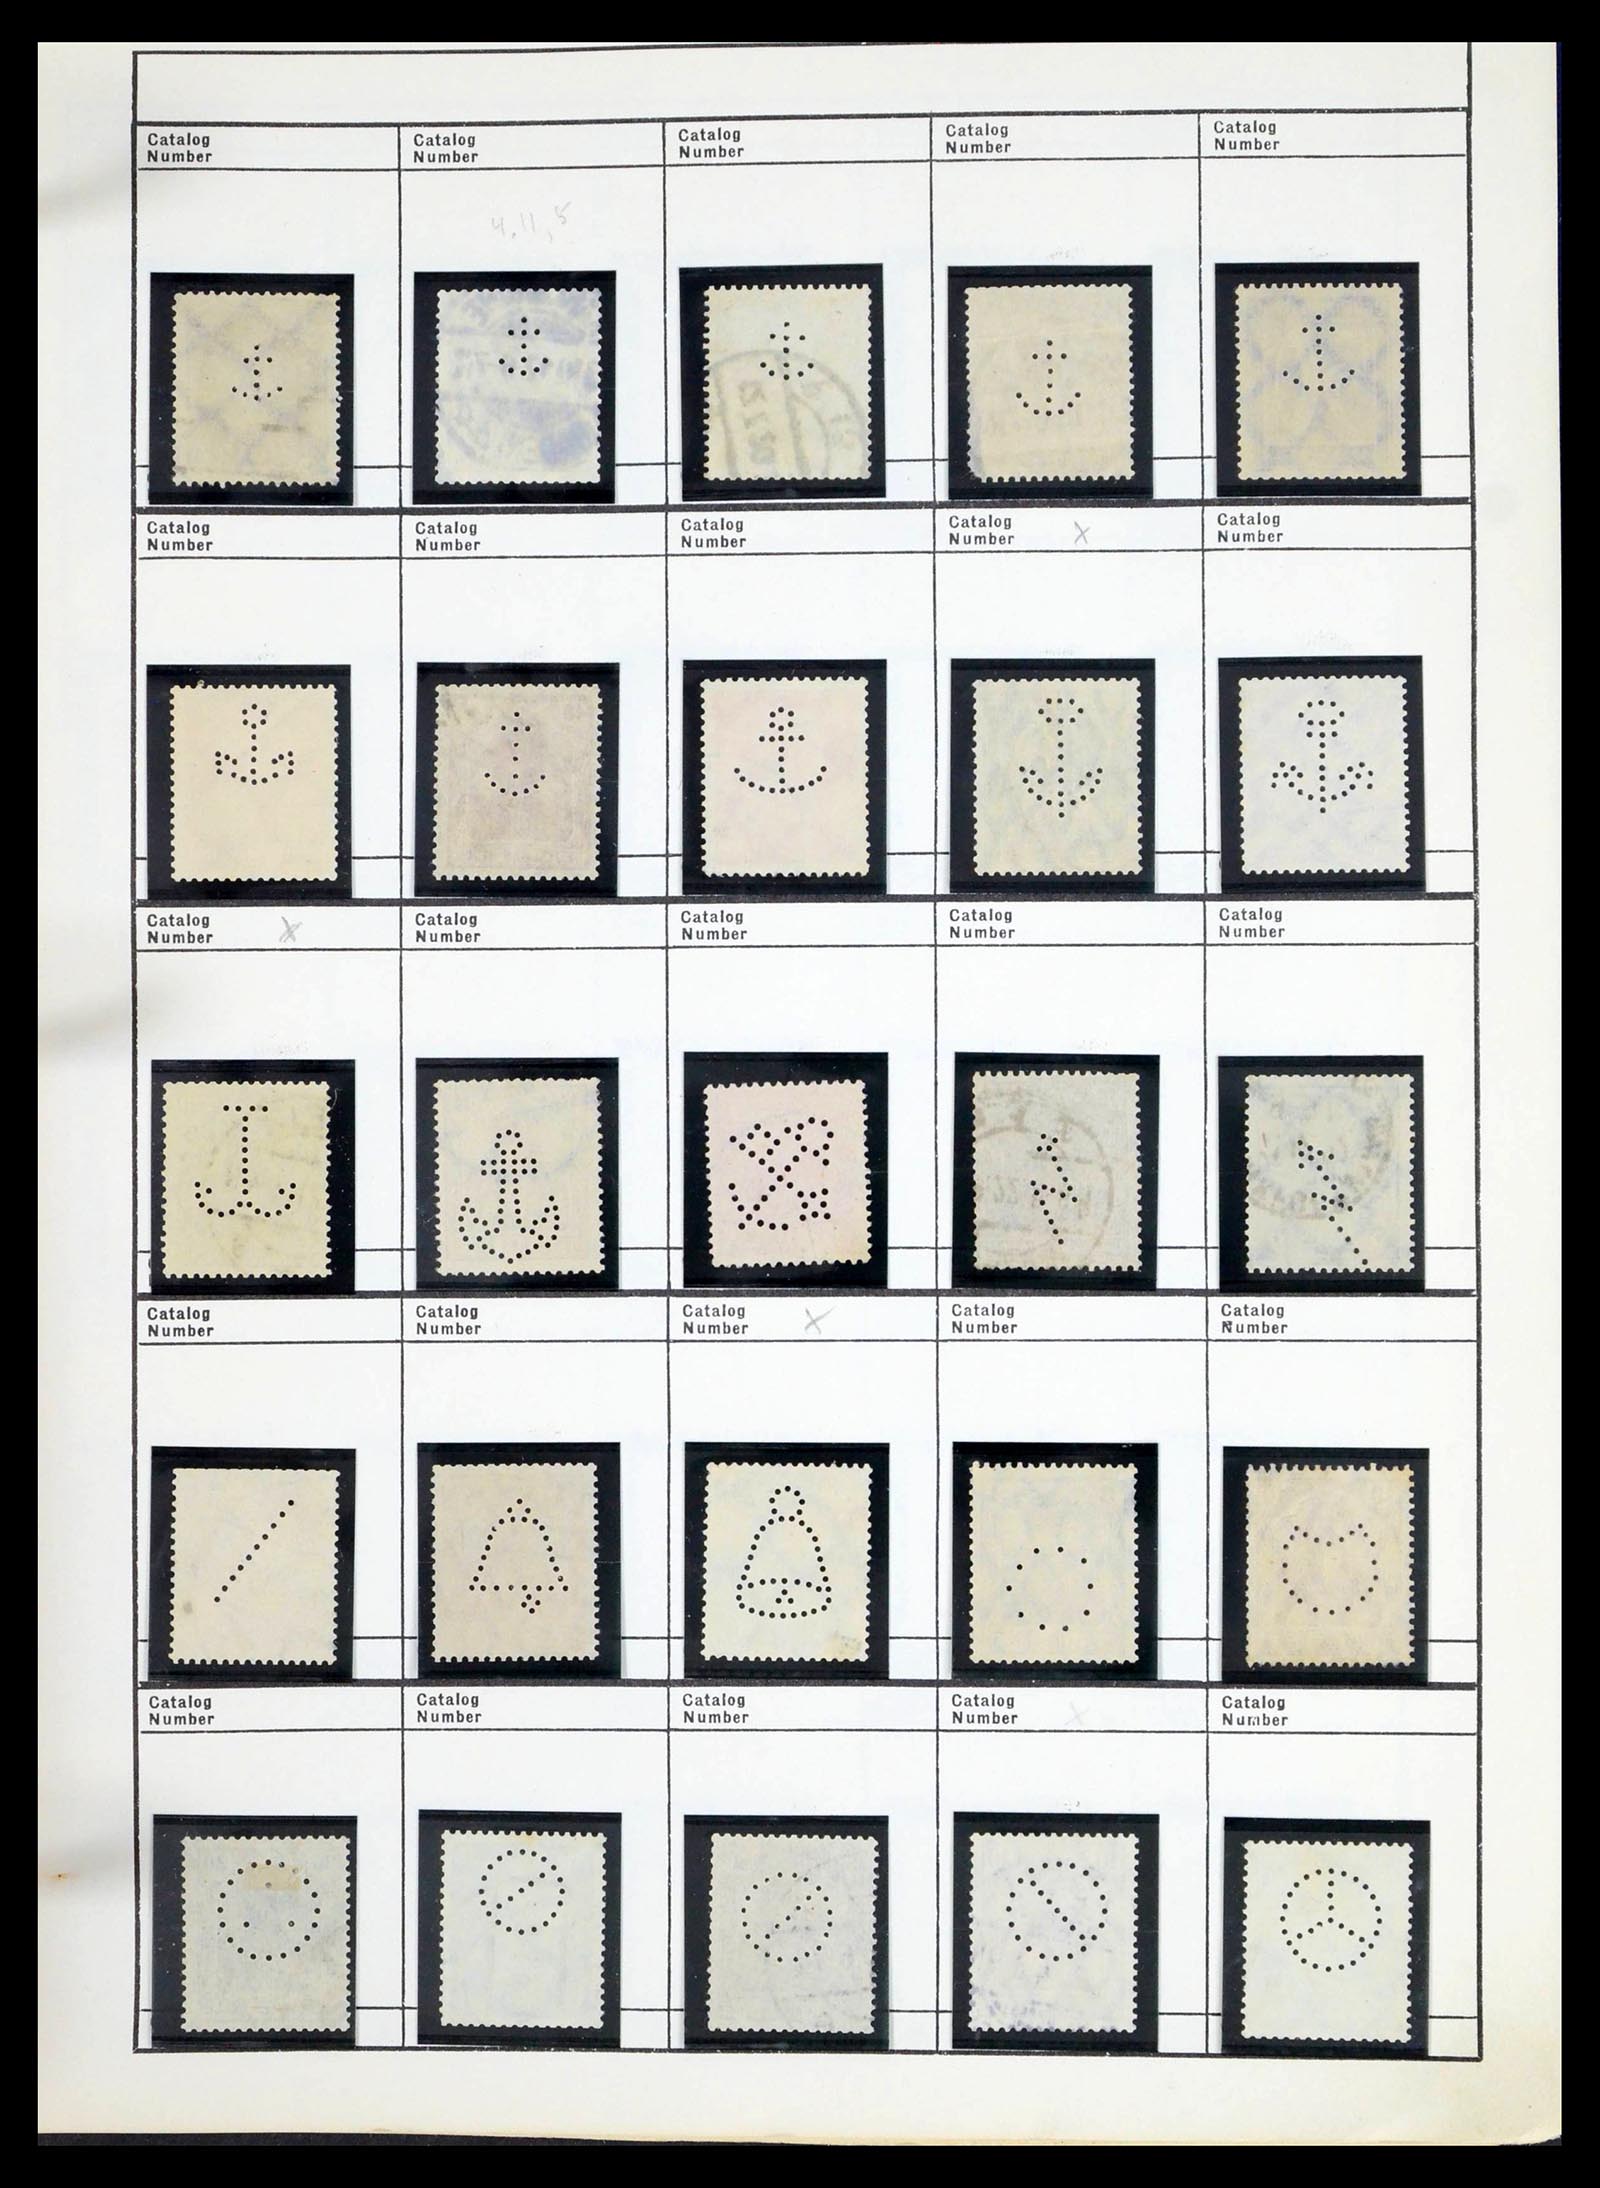 39480 0593 - Stamp collection 39480 German Reich perfins 1880-1955.